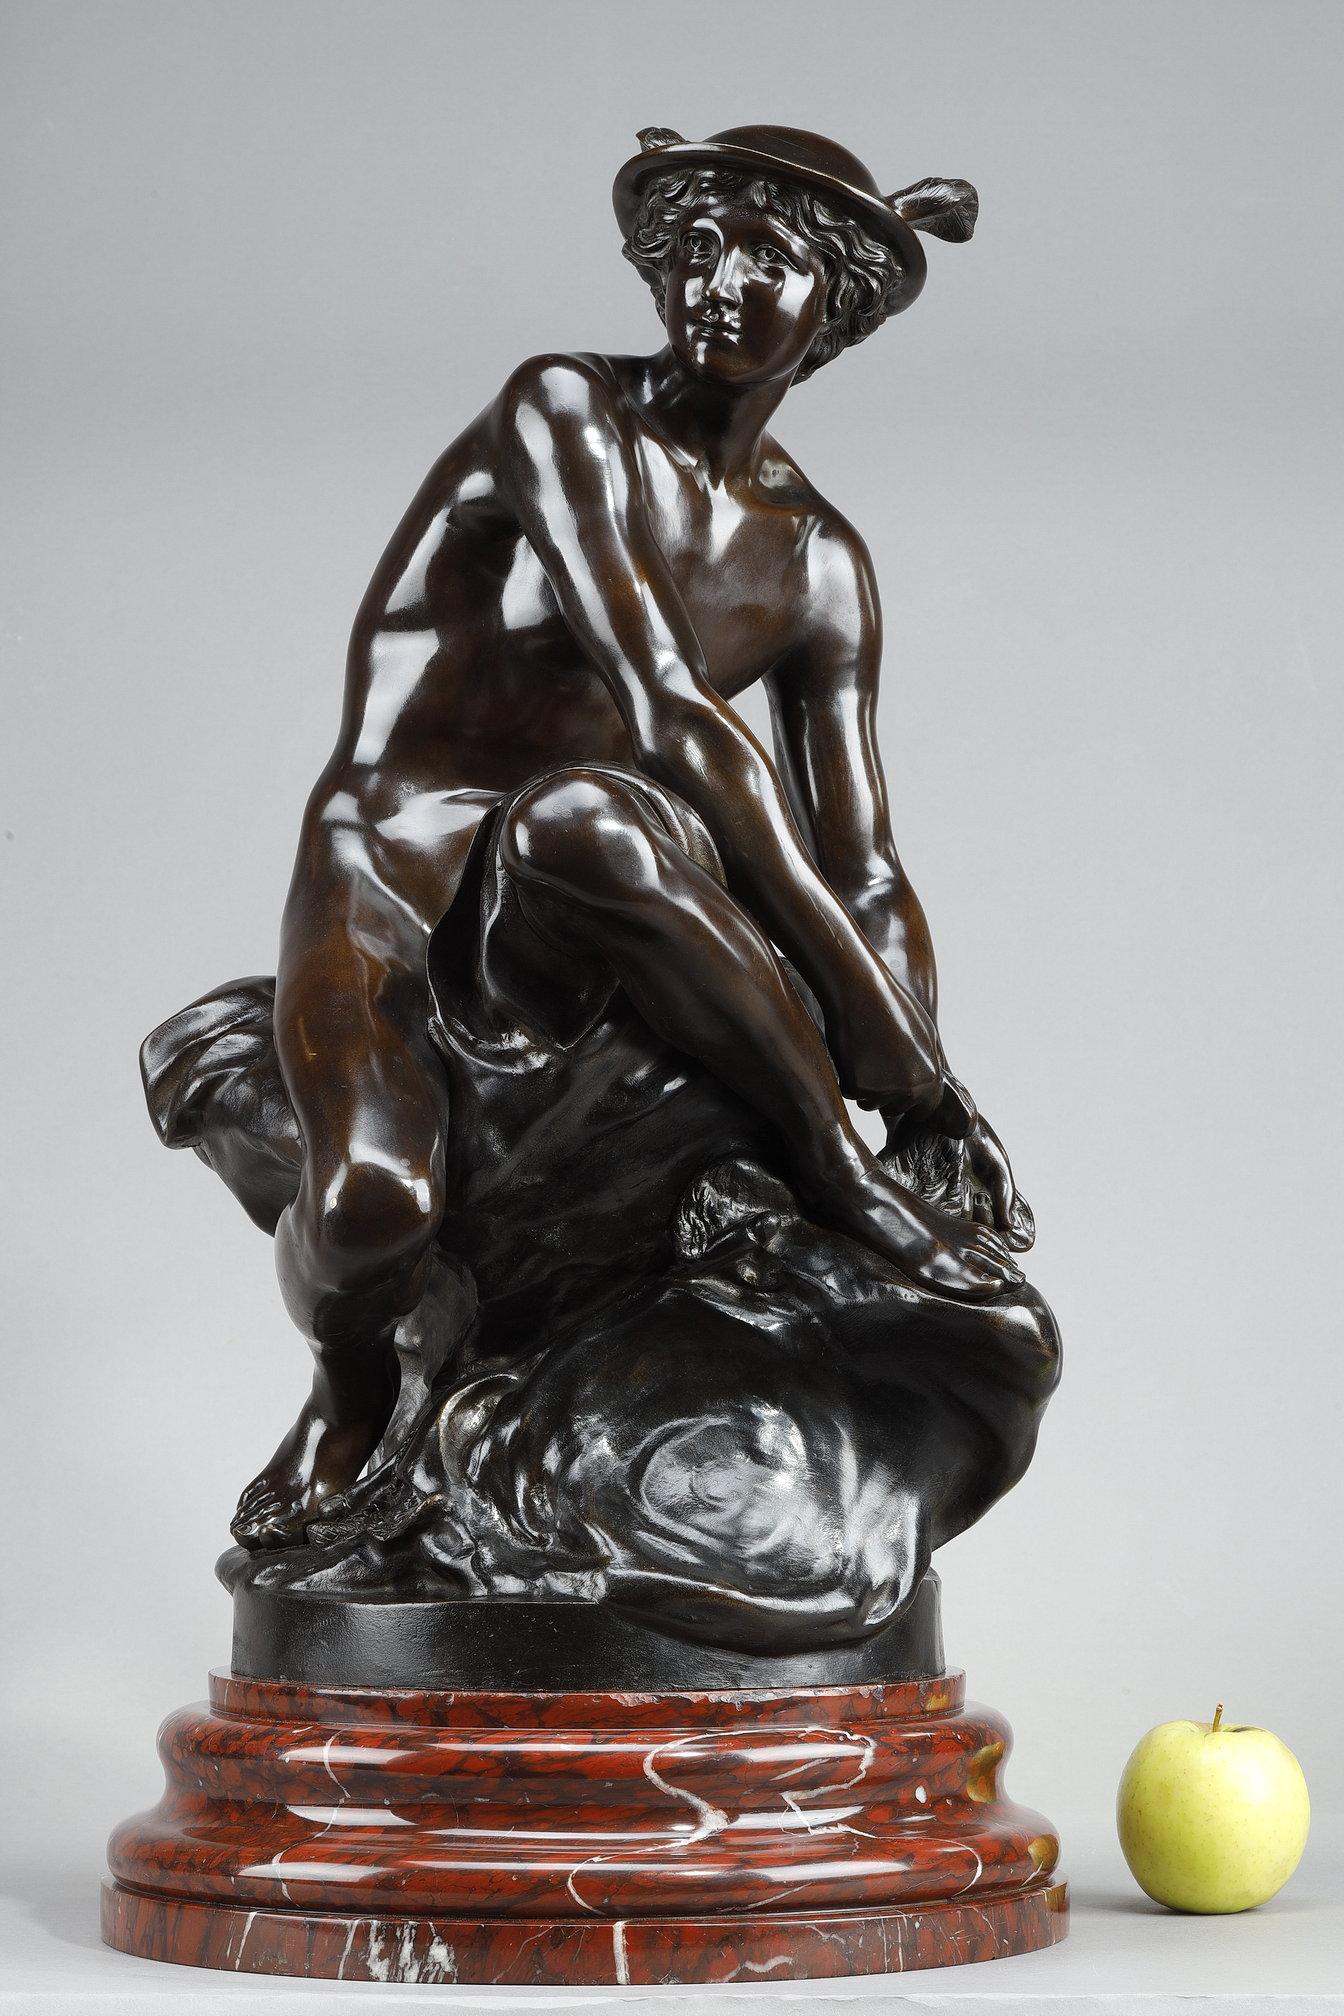 Sculpture en bronze à patine brune représentant Mercure (Hermès), dieu du commerce, des voleurs et messager des dieux, assis sur un rocher en train de nouer sa talonnette ailée. Il porte un pétase, un chapeau ailé, et son caducée repose sur le sol.